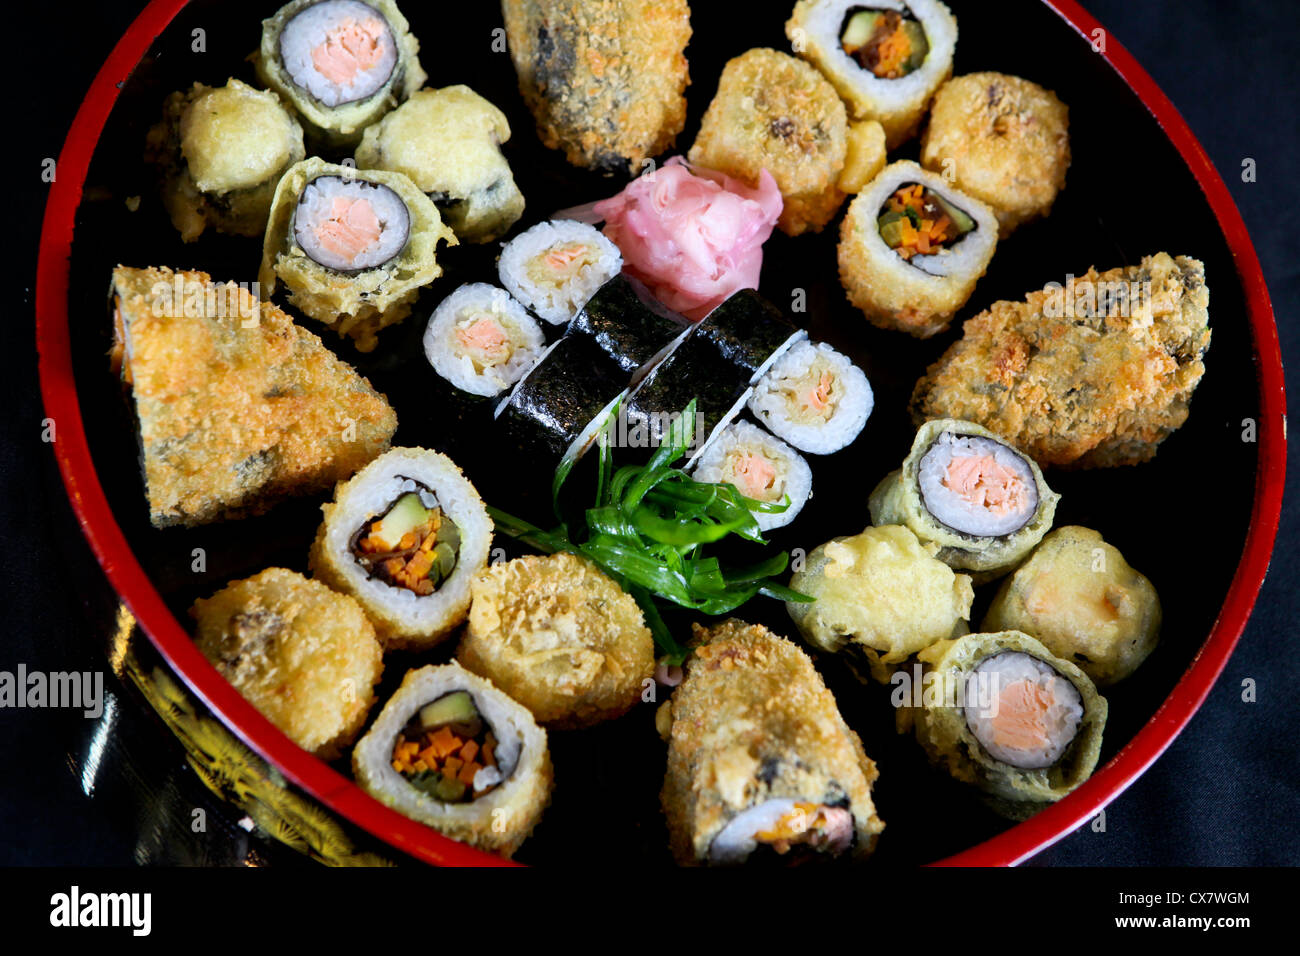 Un assortiment de différents types de sushi y compris : sushi maki, futo maki, dedans et un sandwich frit Banque D'Images